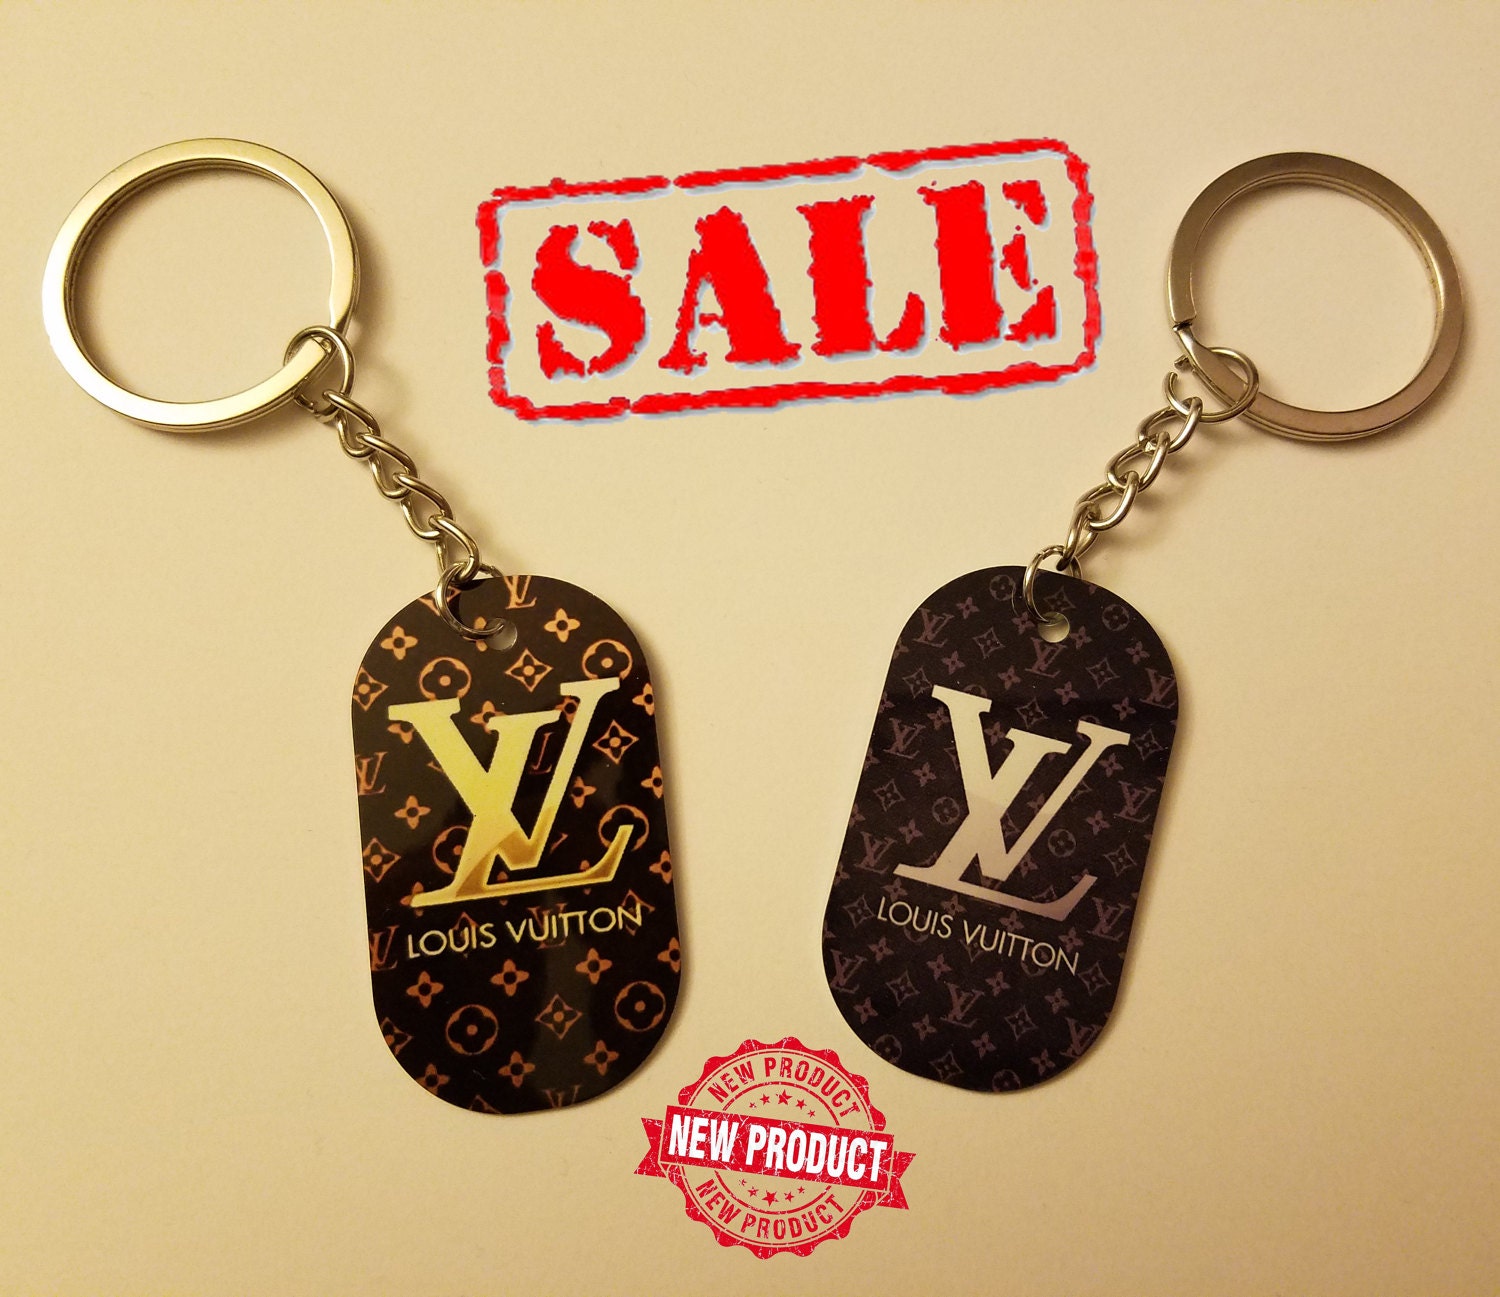 Louis Vuitton Key chain. Louis Vuitton keychain. Cute | Etsy